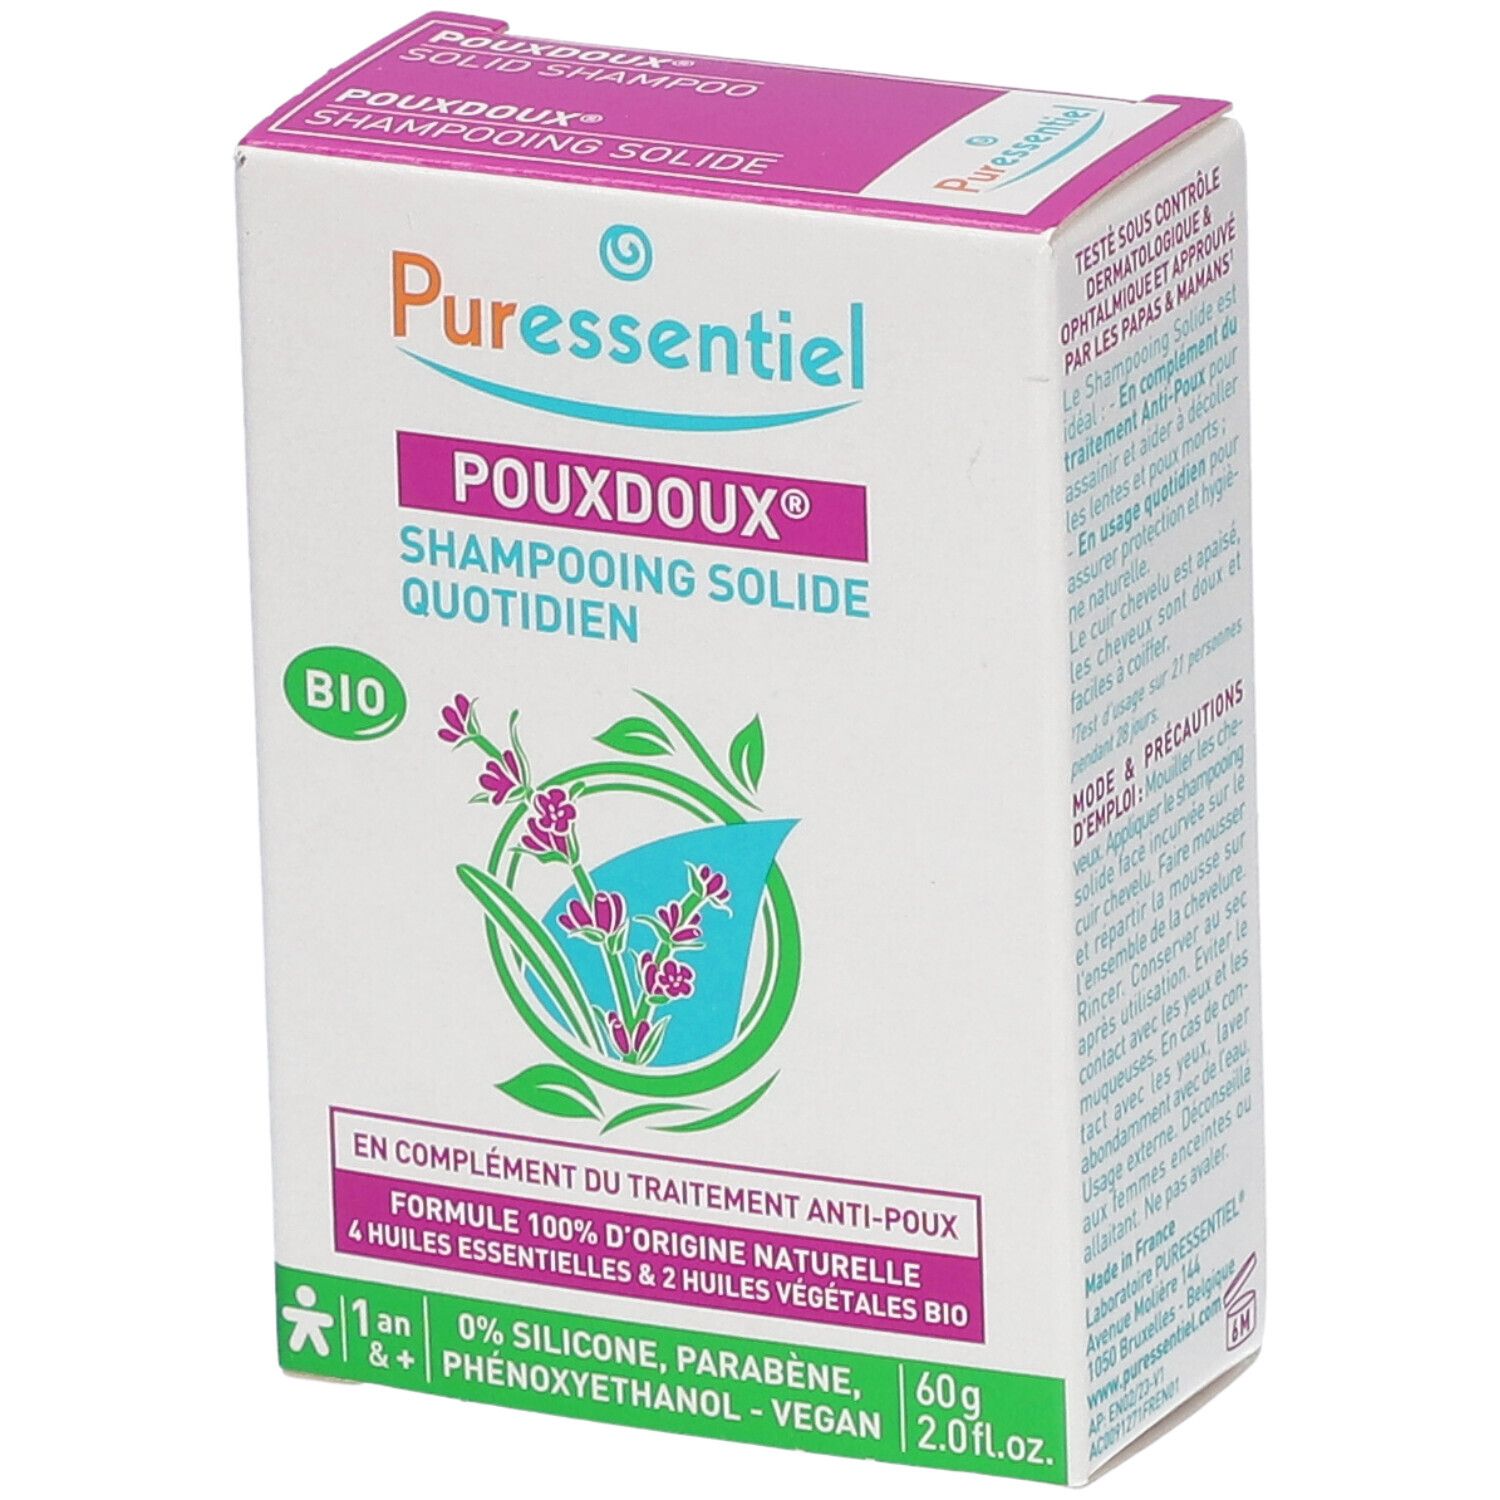 Puressentiel Pouxdoux® Shampooing Solide Quotidien